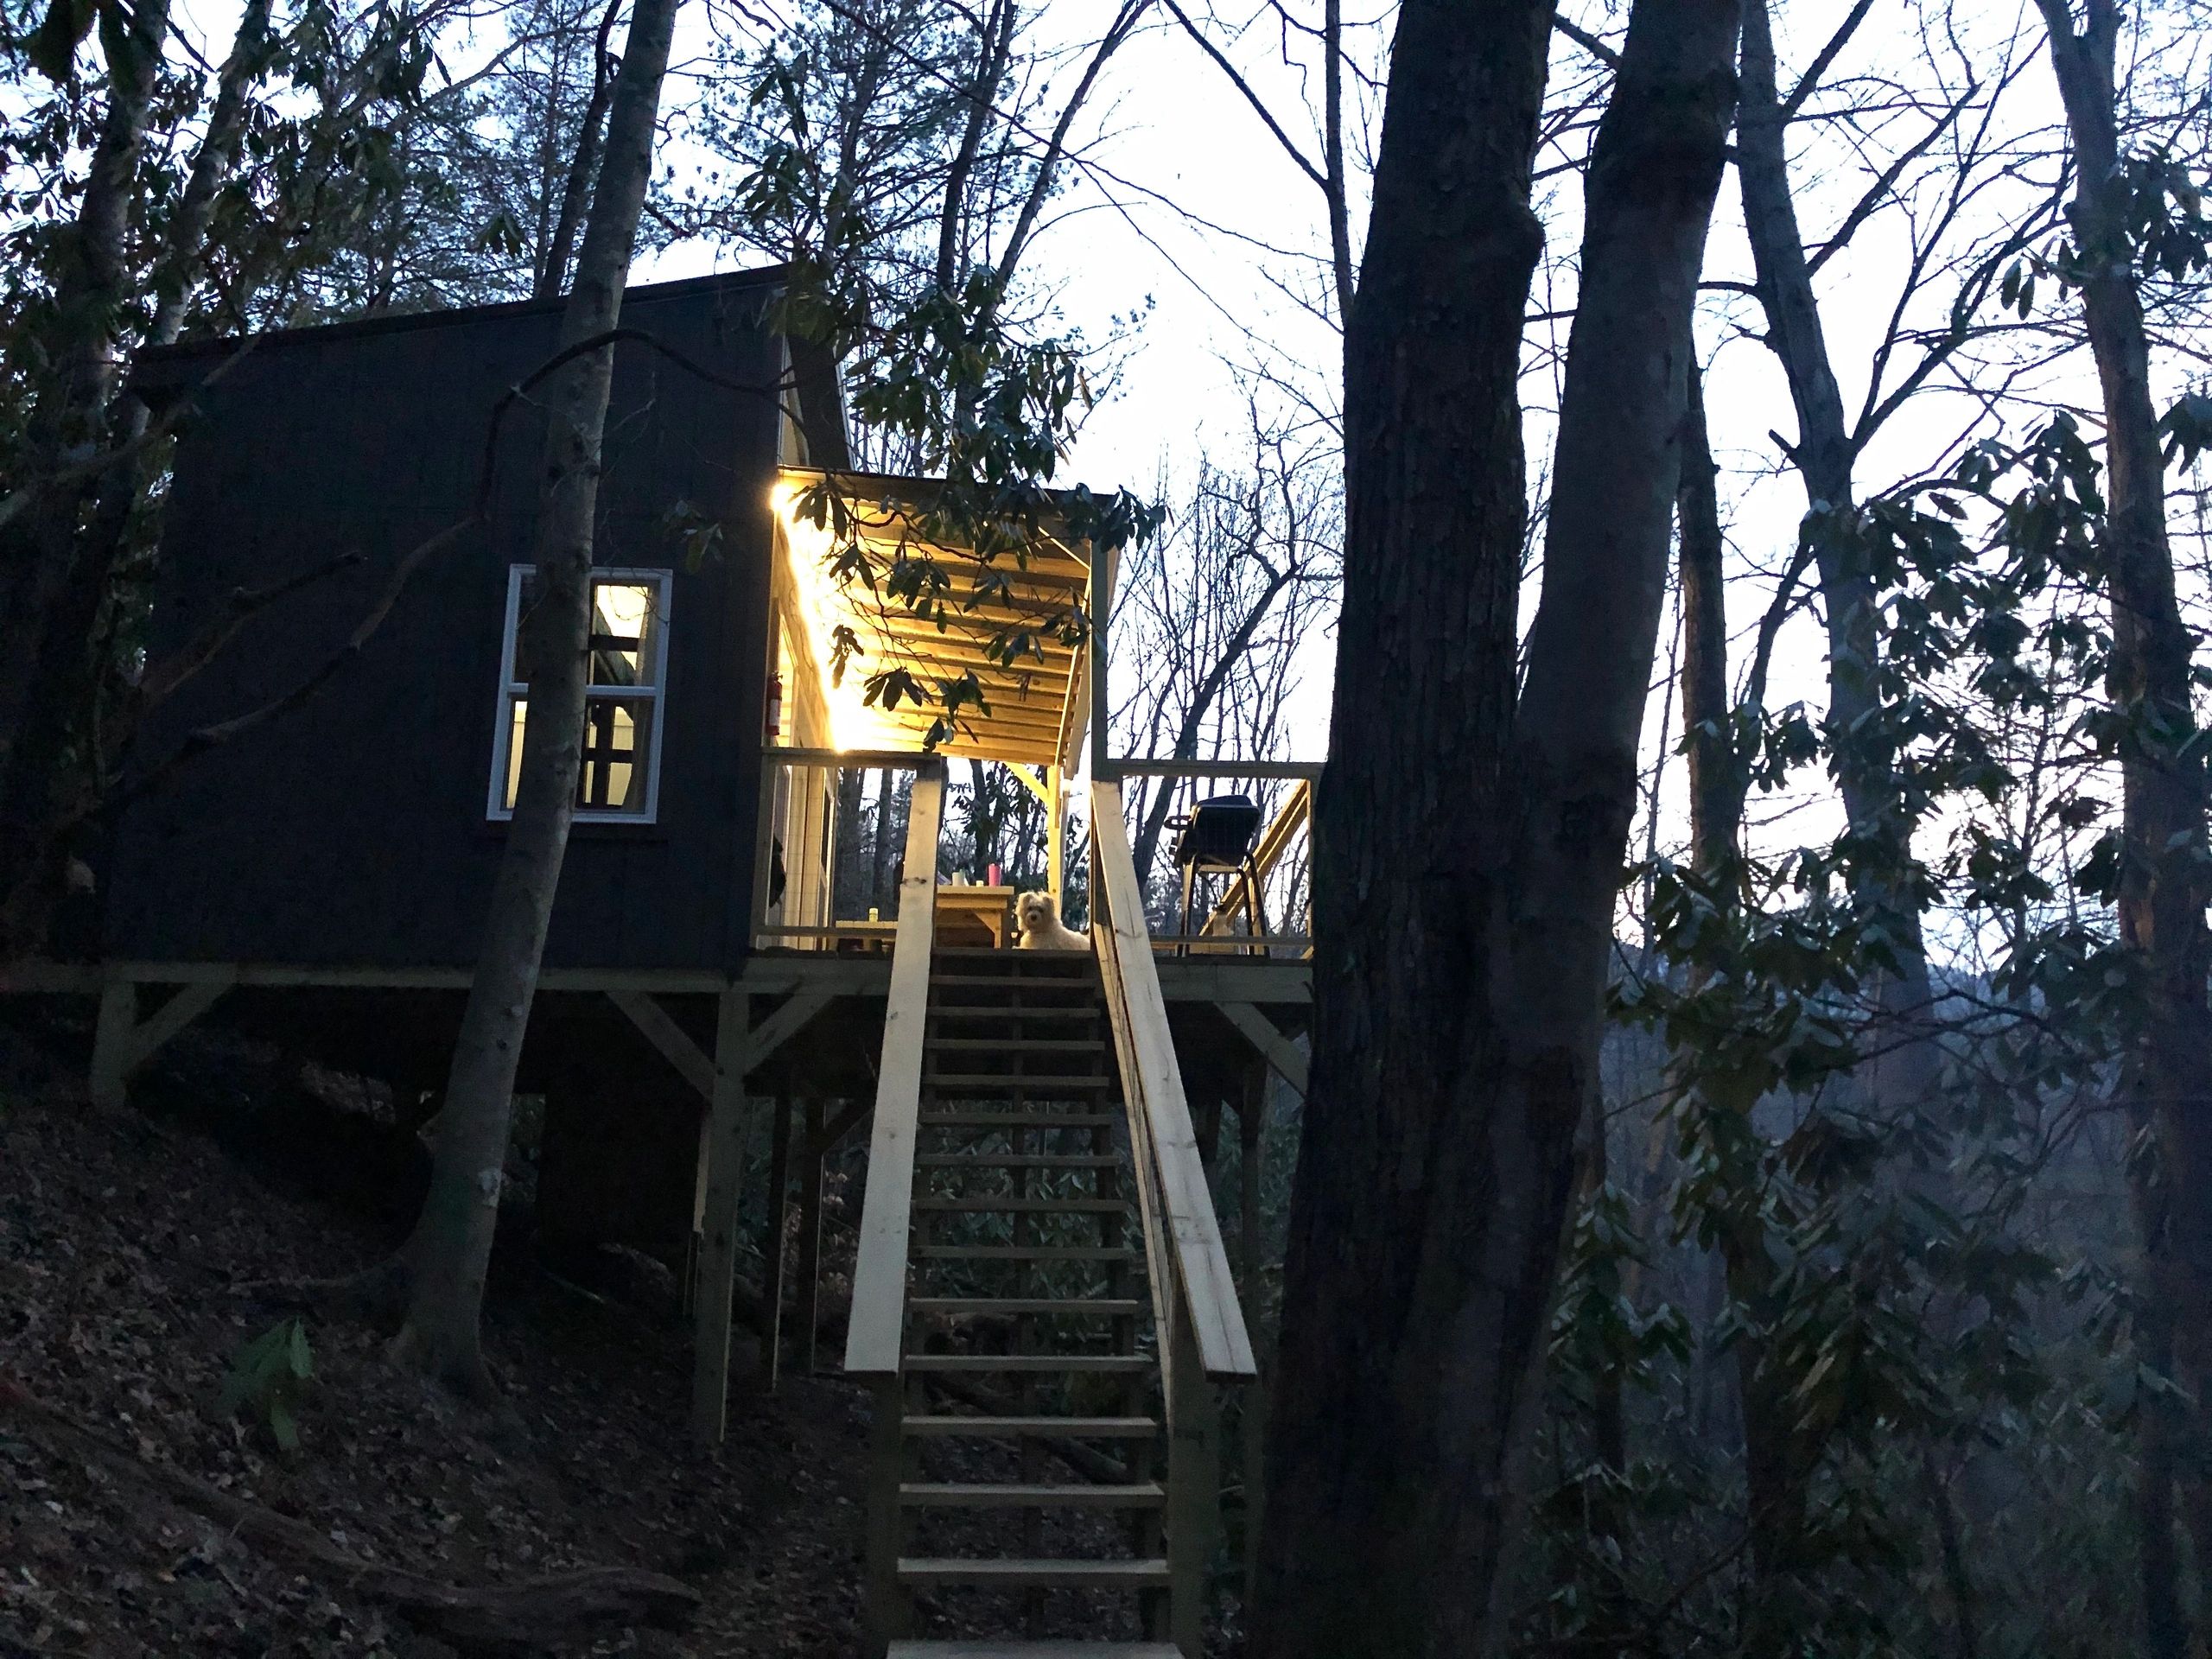 Tree house #2 illuminated by solar-powered lights at dusk